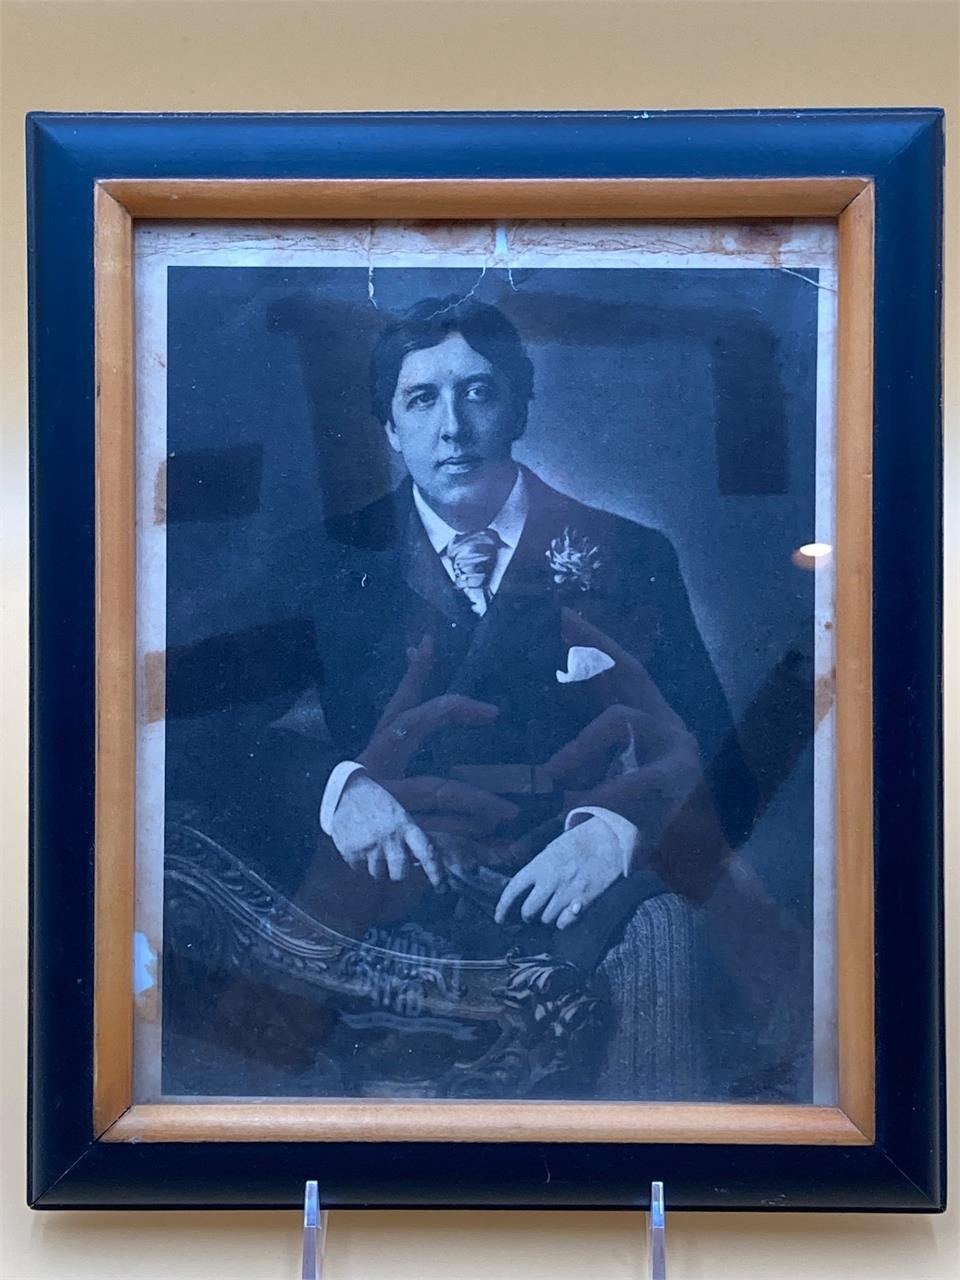 Framed 8x10” Oscar Wilde Photograph